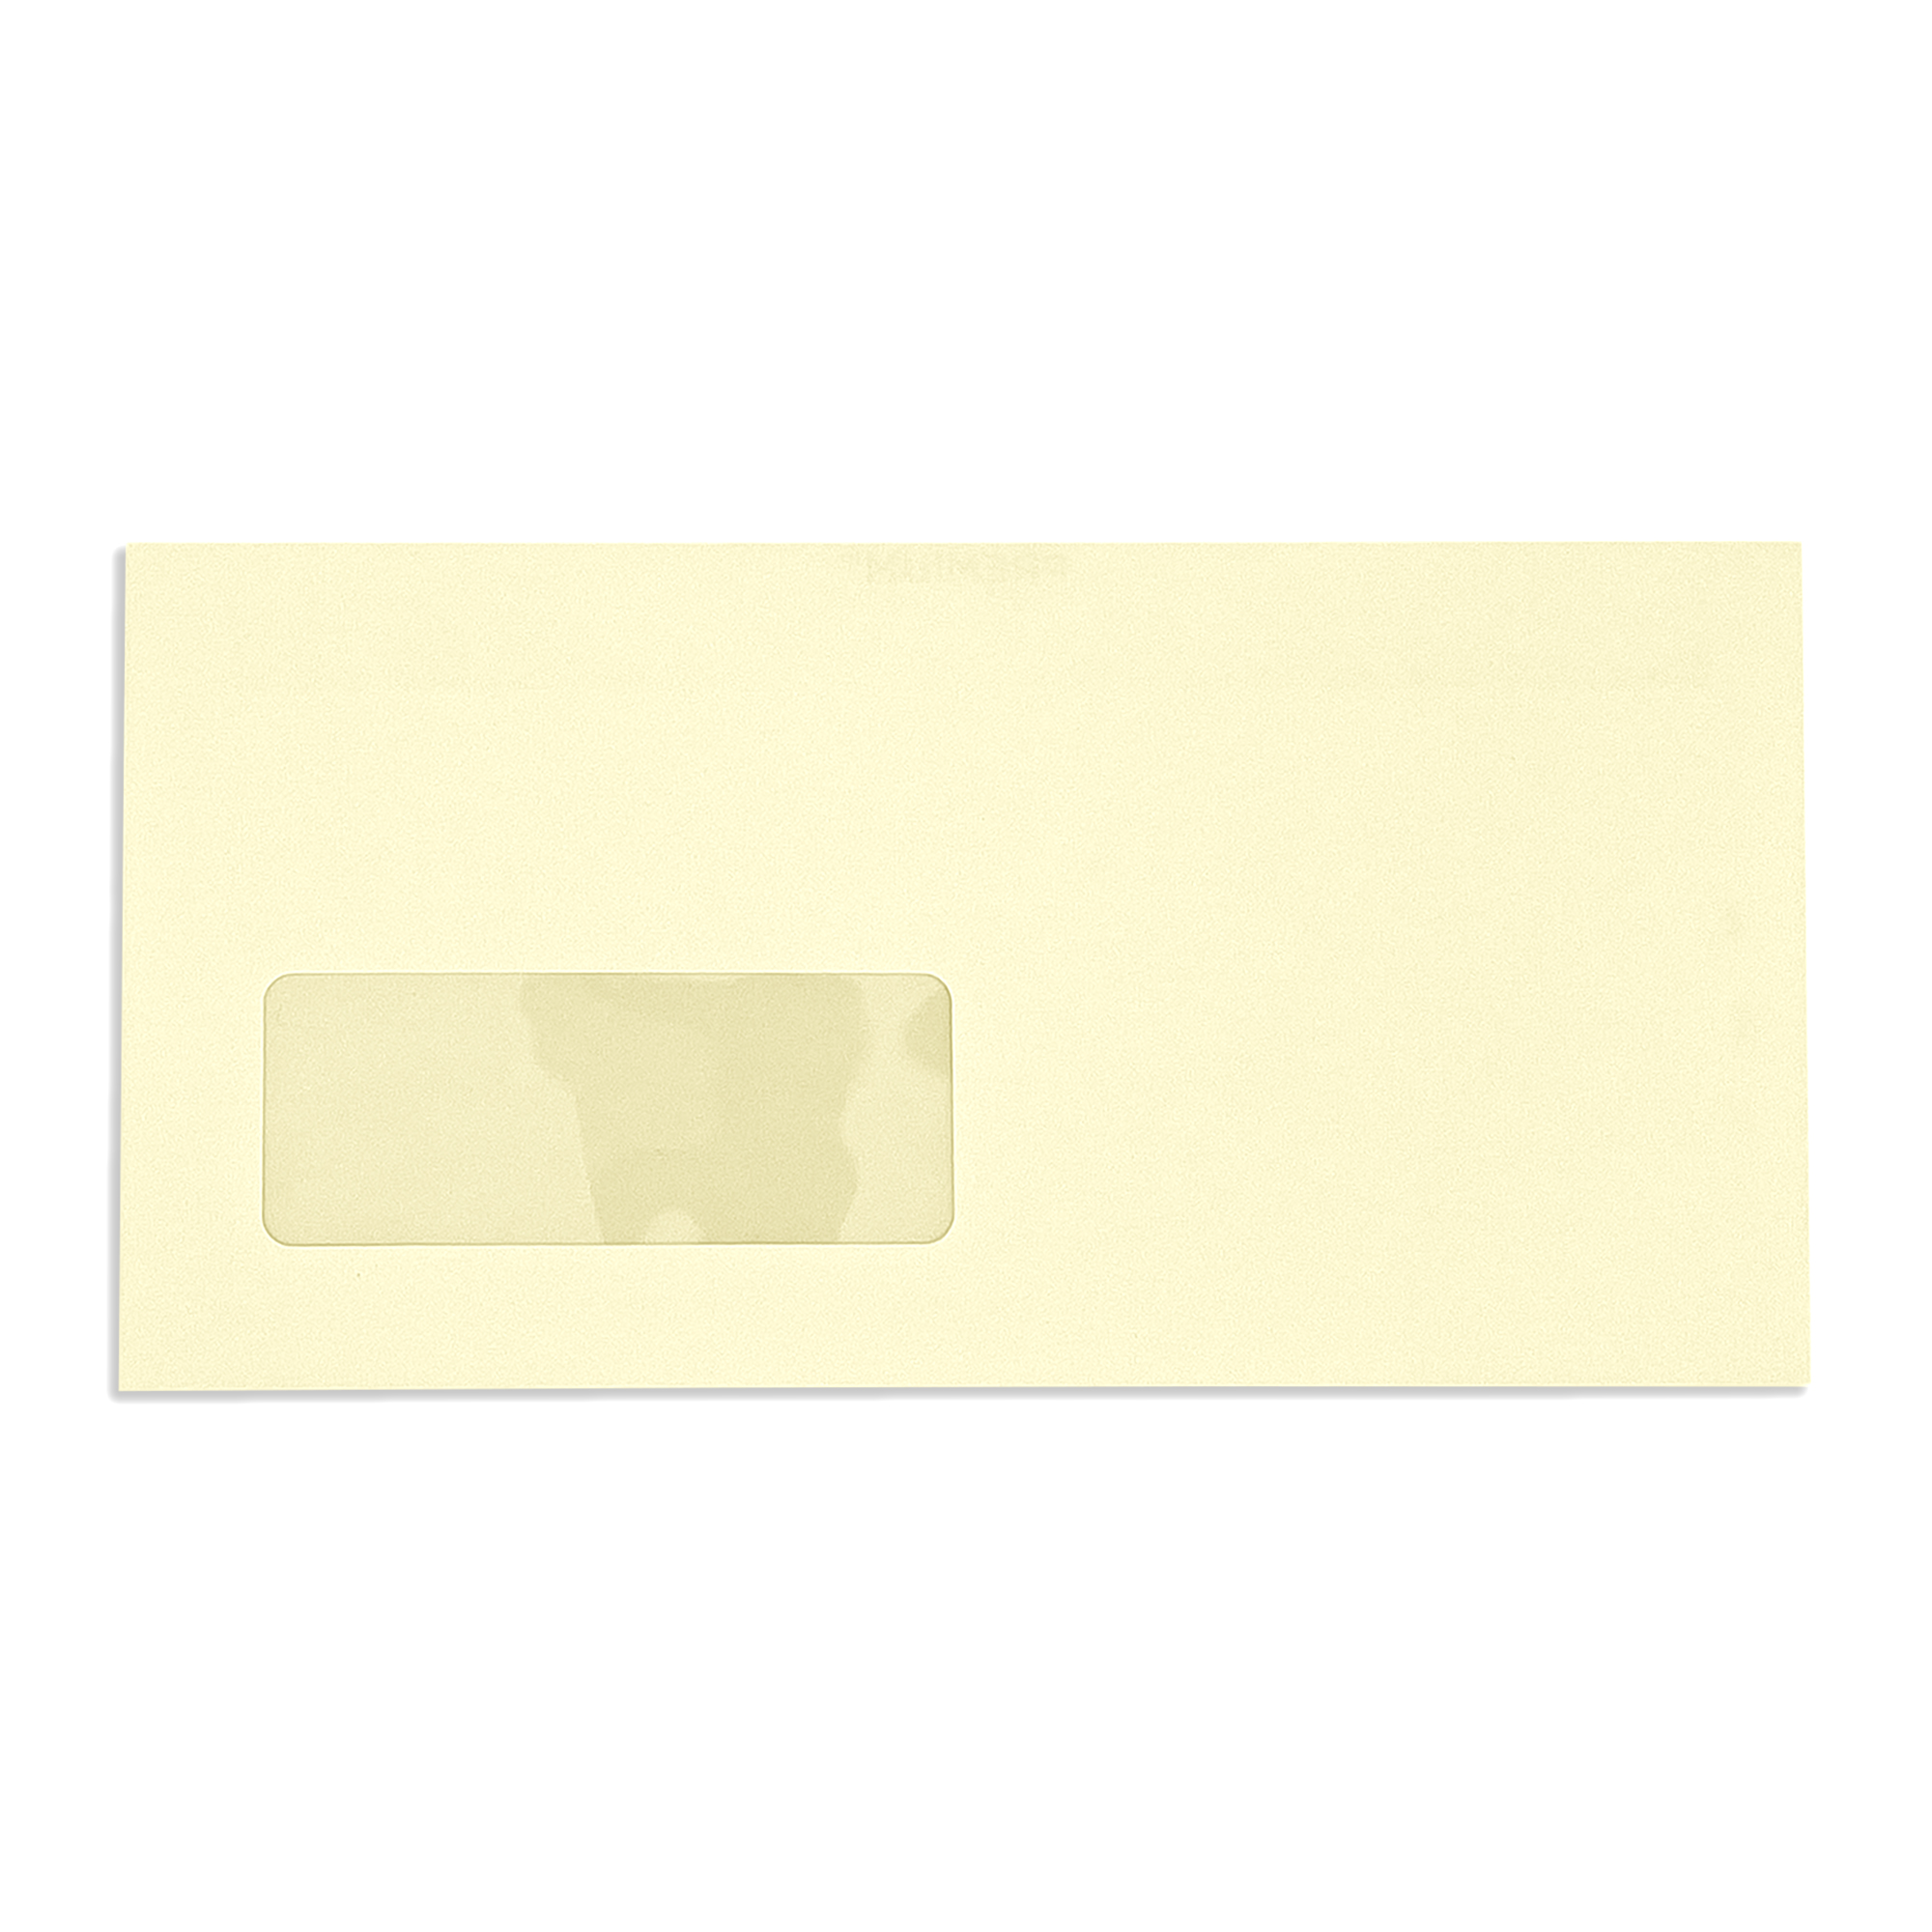 DL-window-vellum-wove-120gsm-wallet-envelopes-front